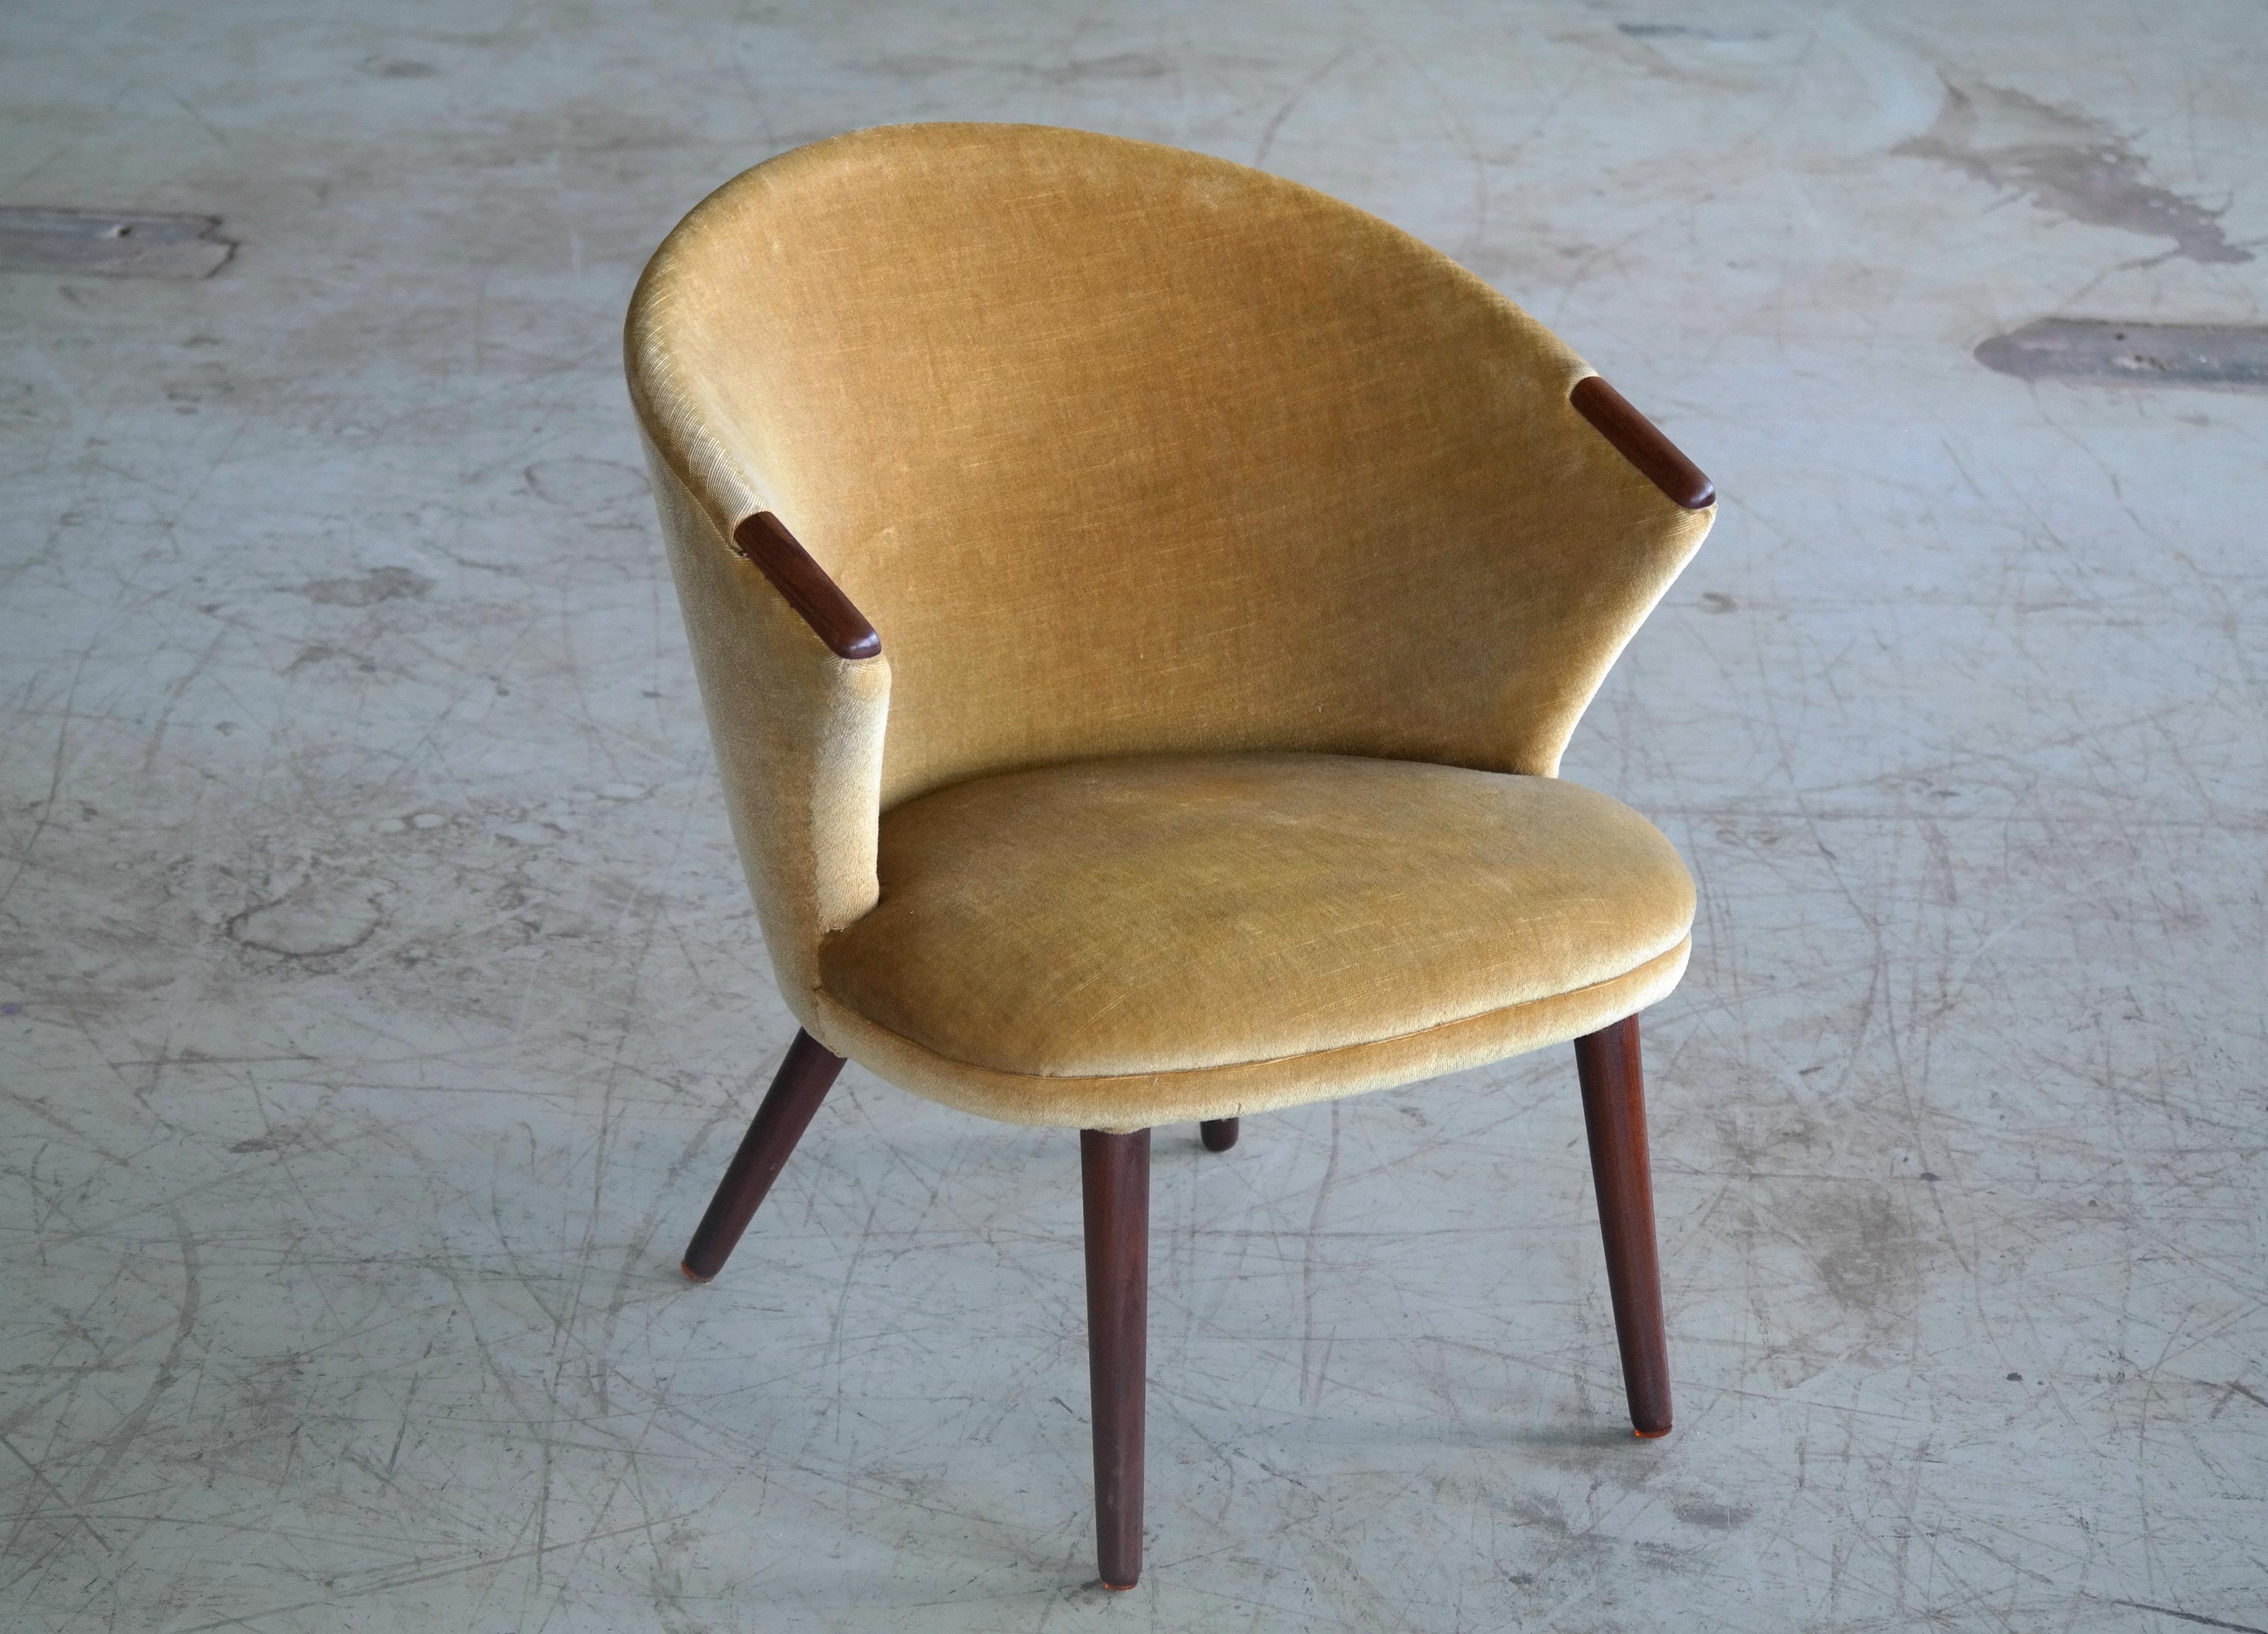 Bent Møller Jepsen's iconic lounge chair originally named the 